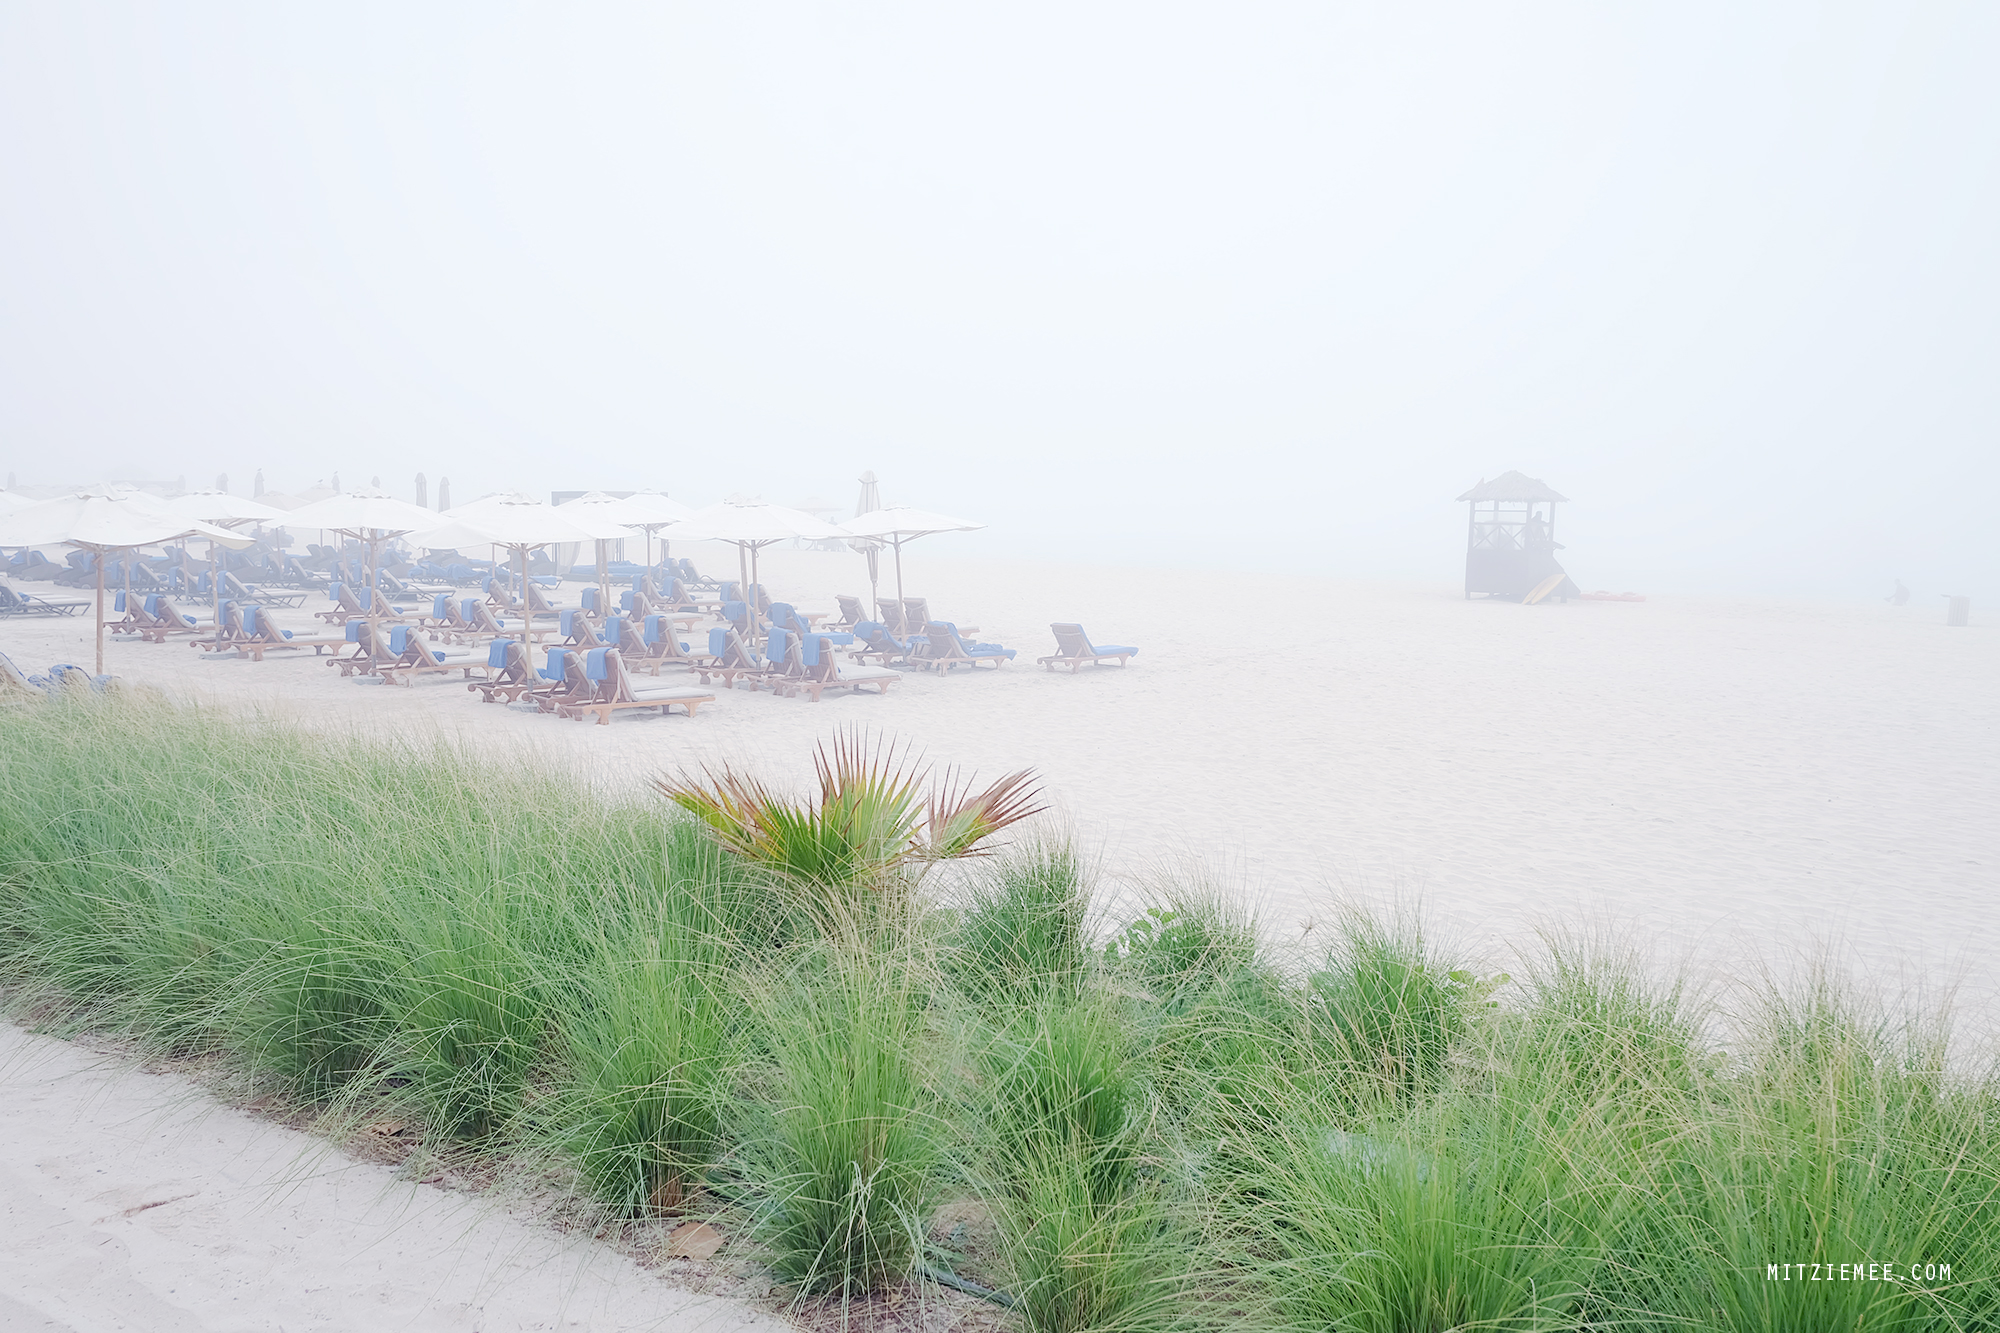 JBR Beach on a hazy day, Dubai